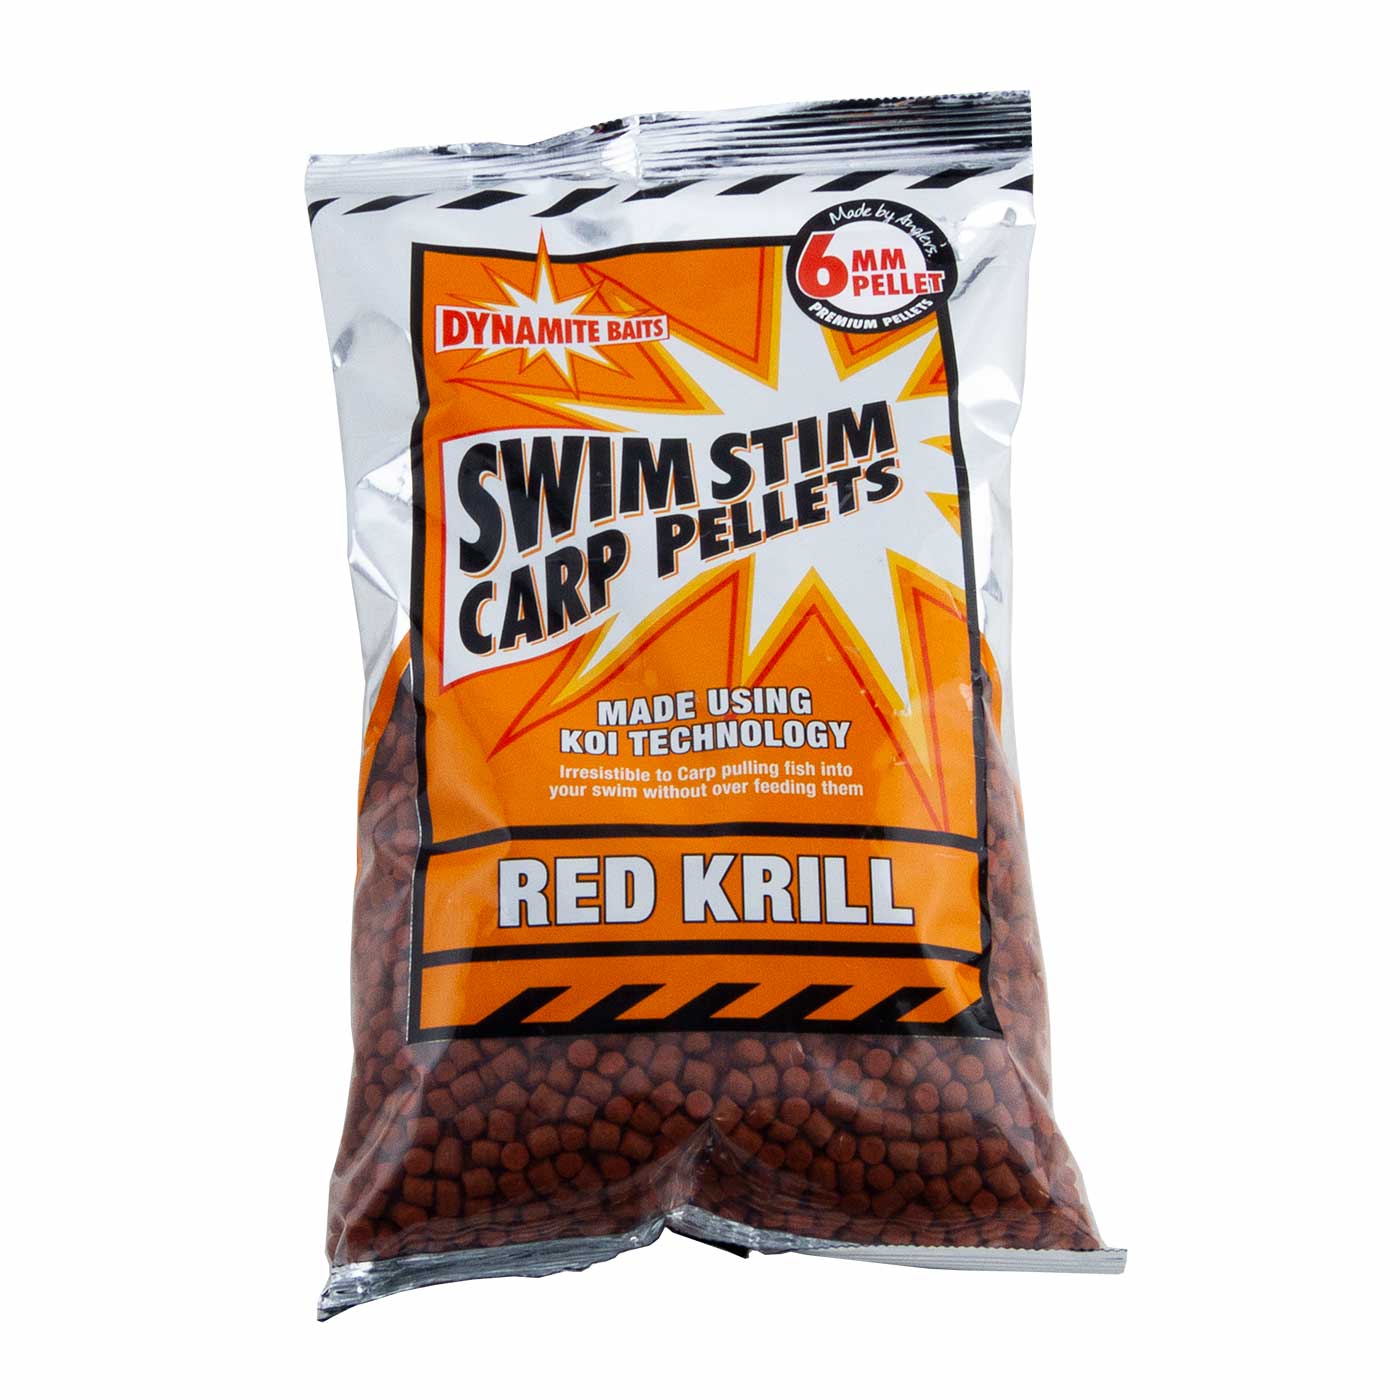 Dynamite Baits Swim Stim Pellets 900g 6mm Red Krill